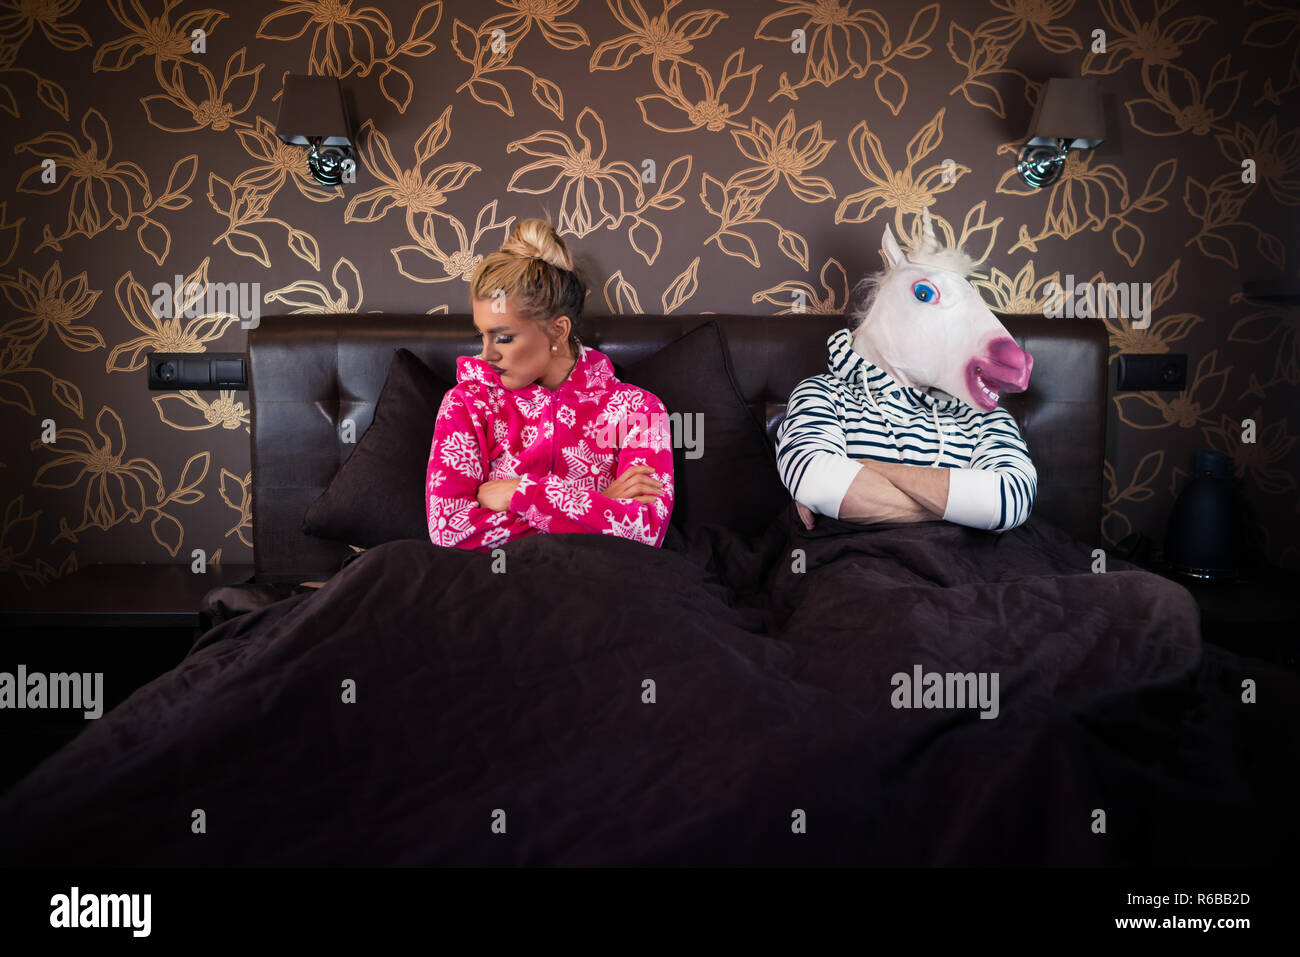 Ungewöhnliche Paar hat Beziehung Probleme. Schöne junge Frau im Pyjama auf dem Bett mit seltsamen Freund in freaky Maske in stilvoll eingerichteten Apartments. Stockfoto